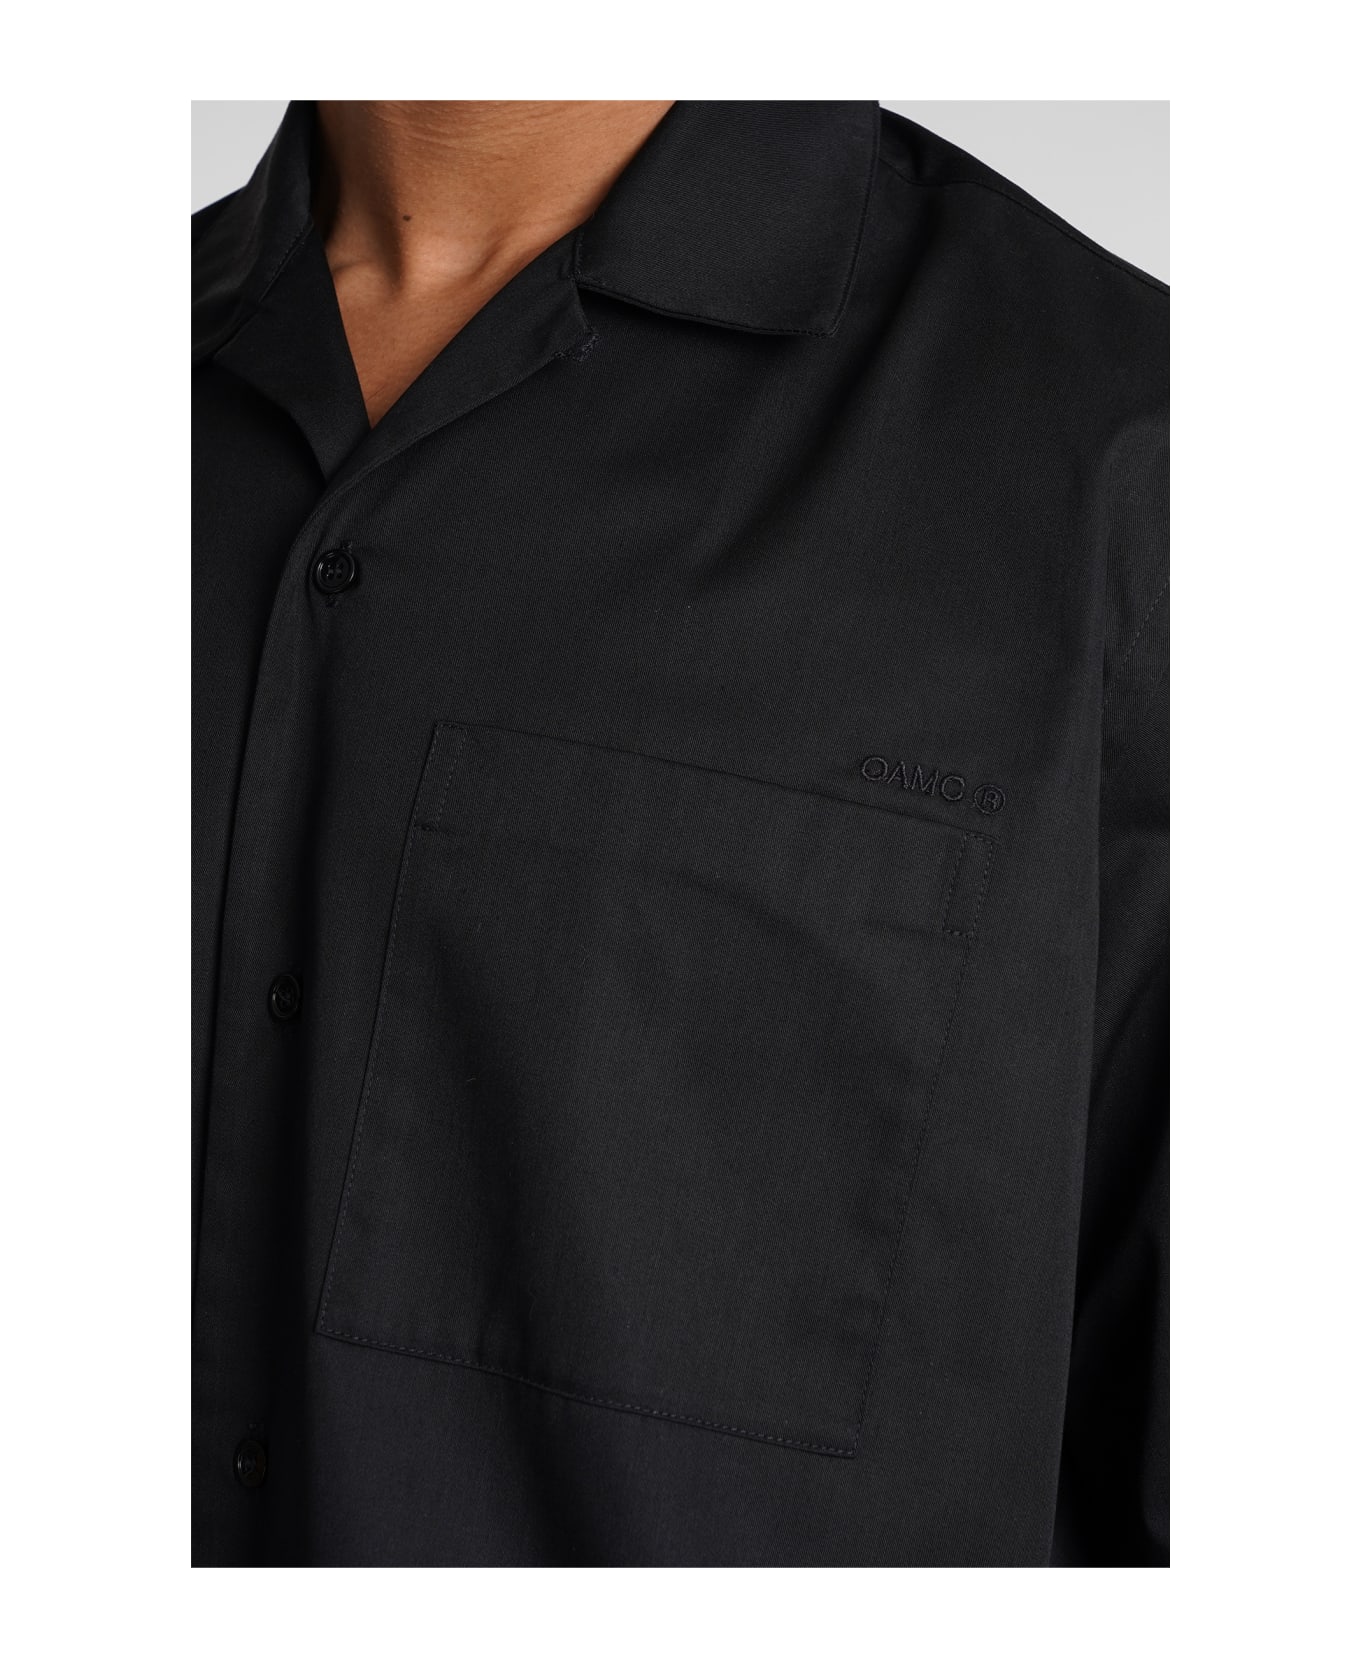 OAMC Shirt In Black Polyester - black シャツ